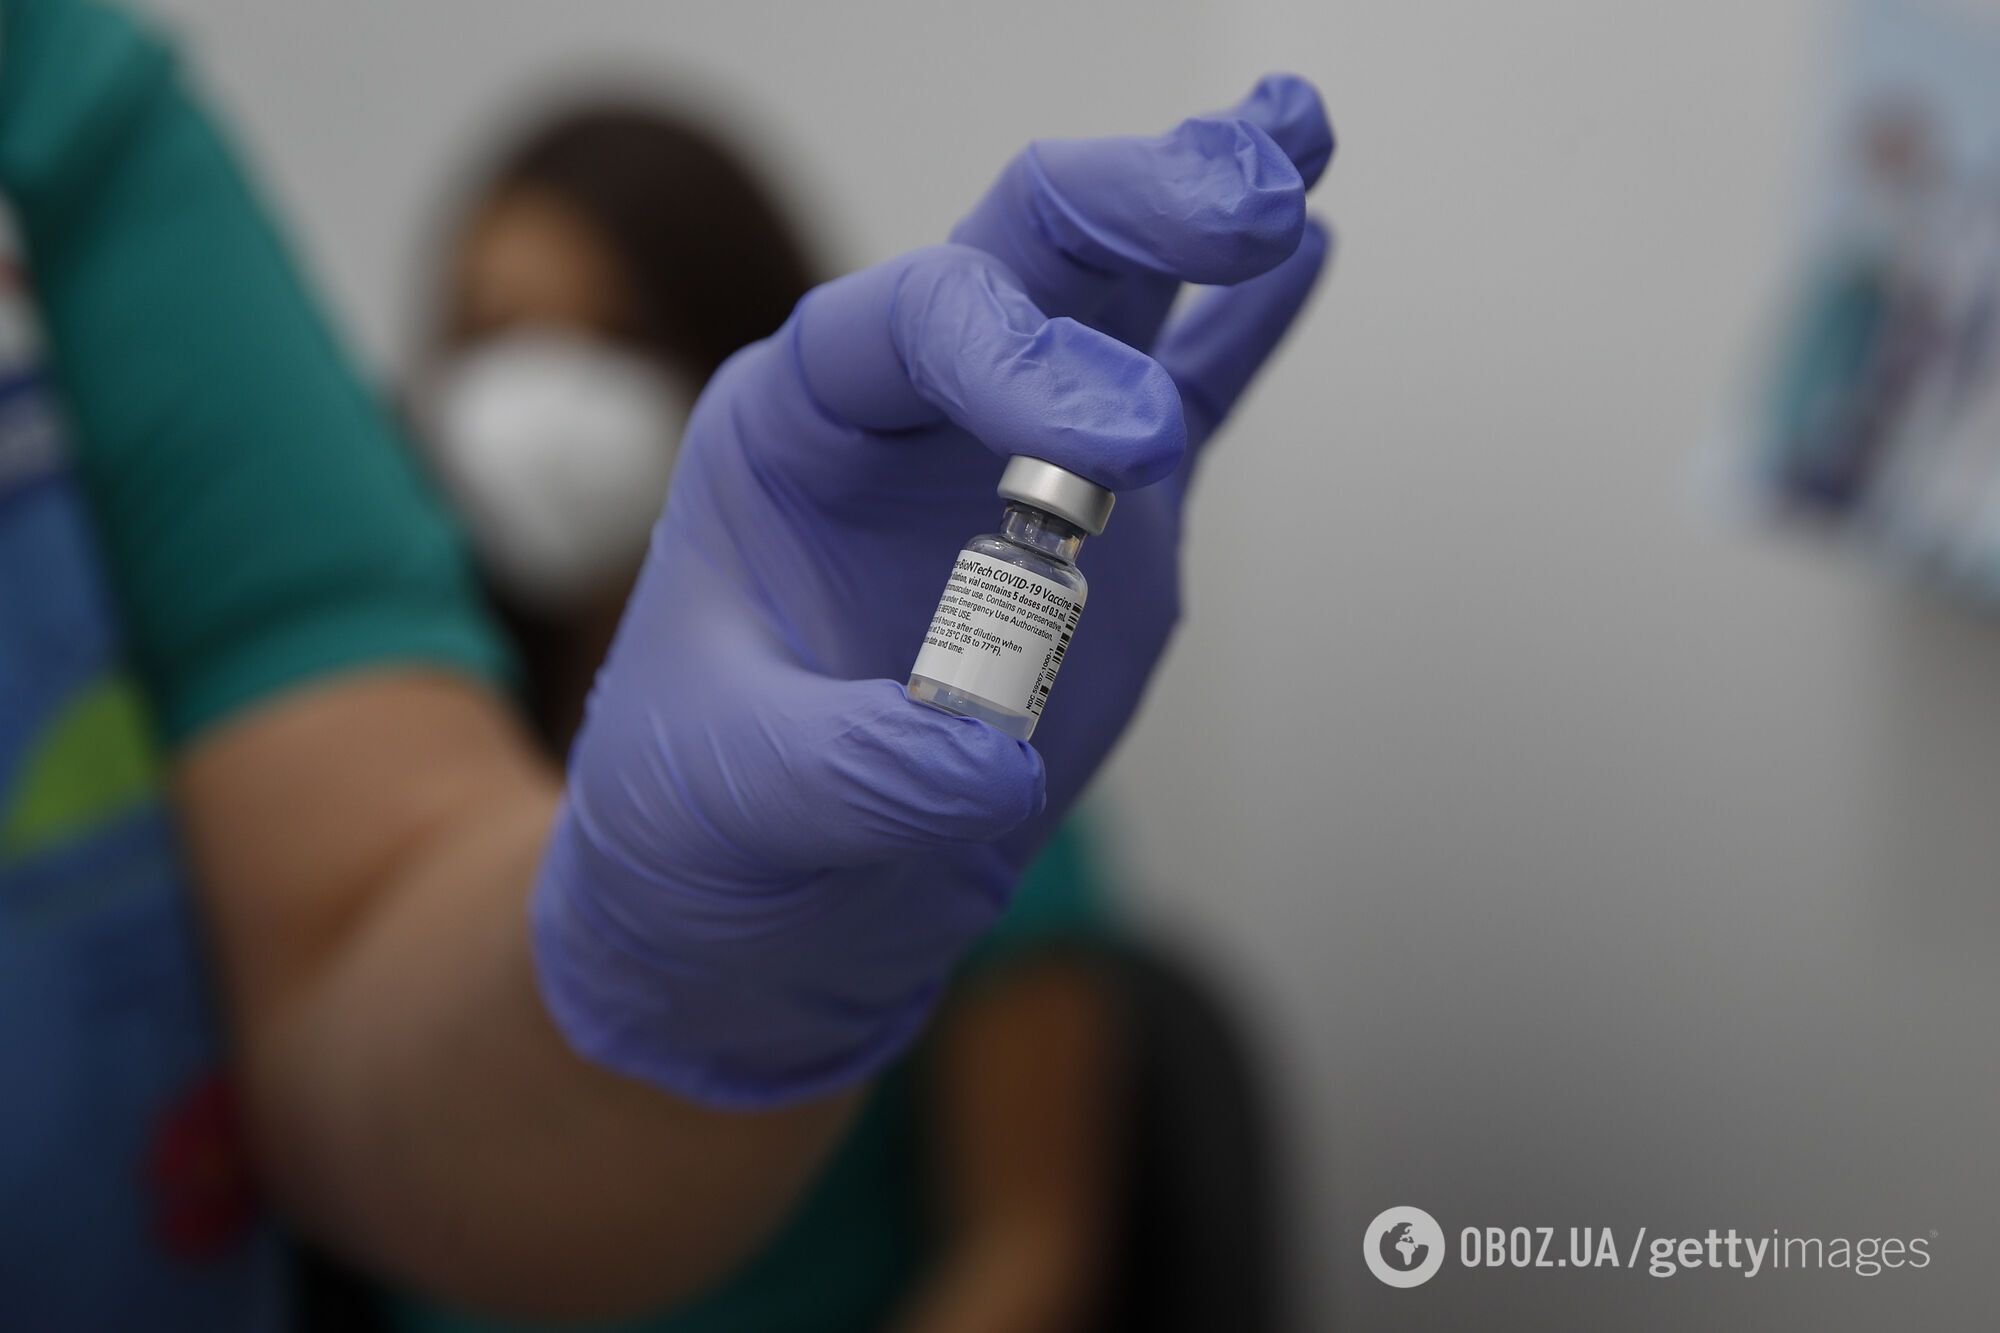 Доза вакцины от коронавируса в украинских аптеках может стоить 700 грн.